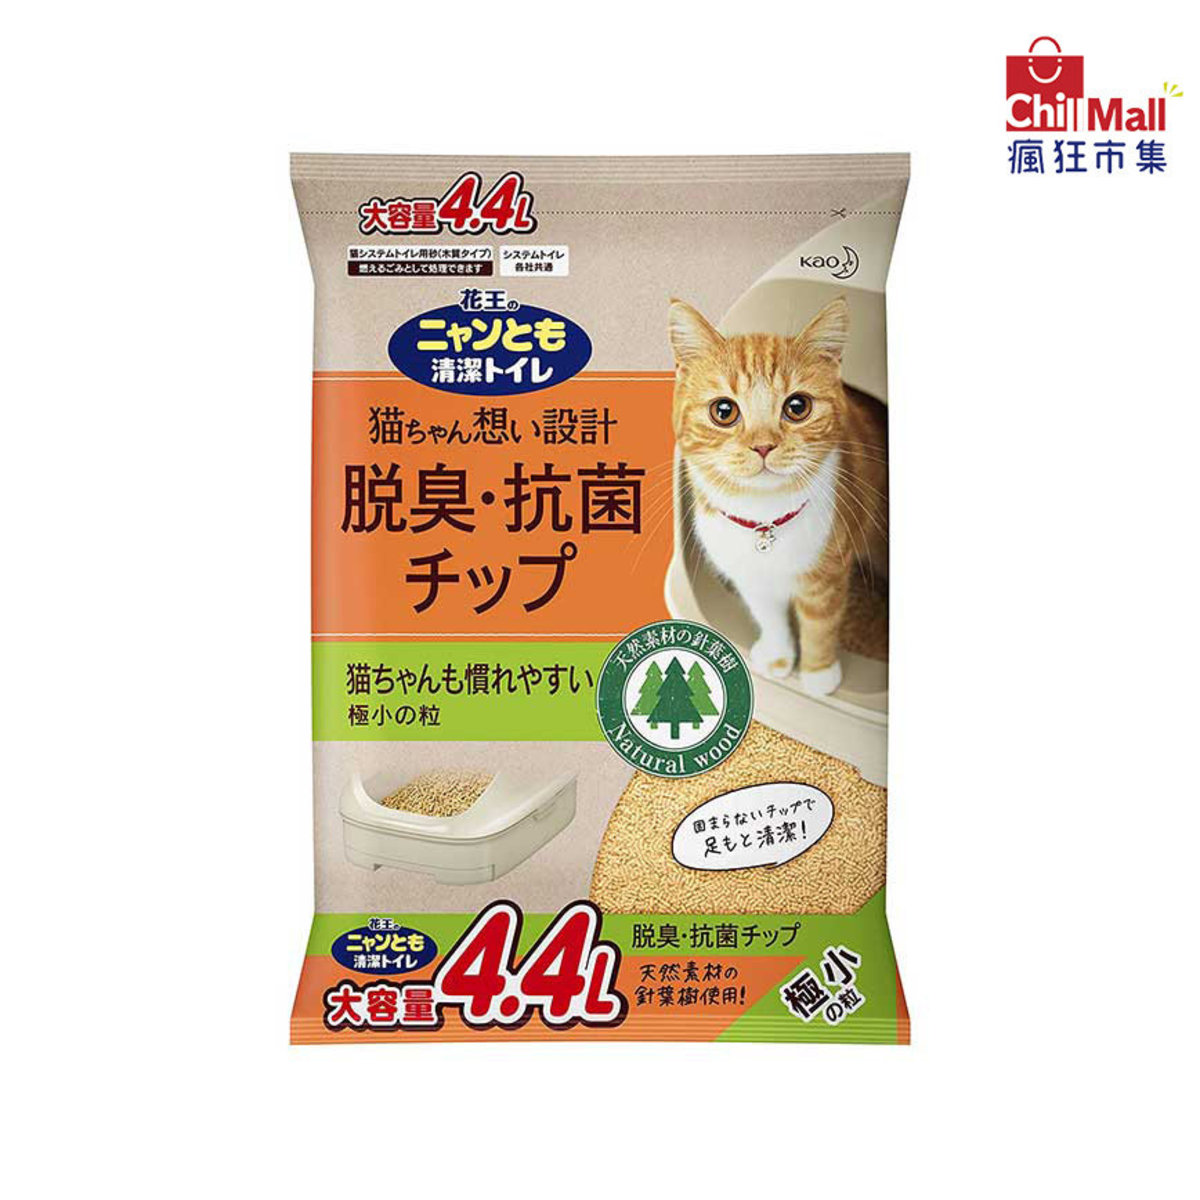 【木貓砂】日本花王脫臭抗菌極小粒木貓砂 4.4L (綠) 1388339